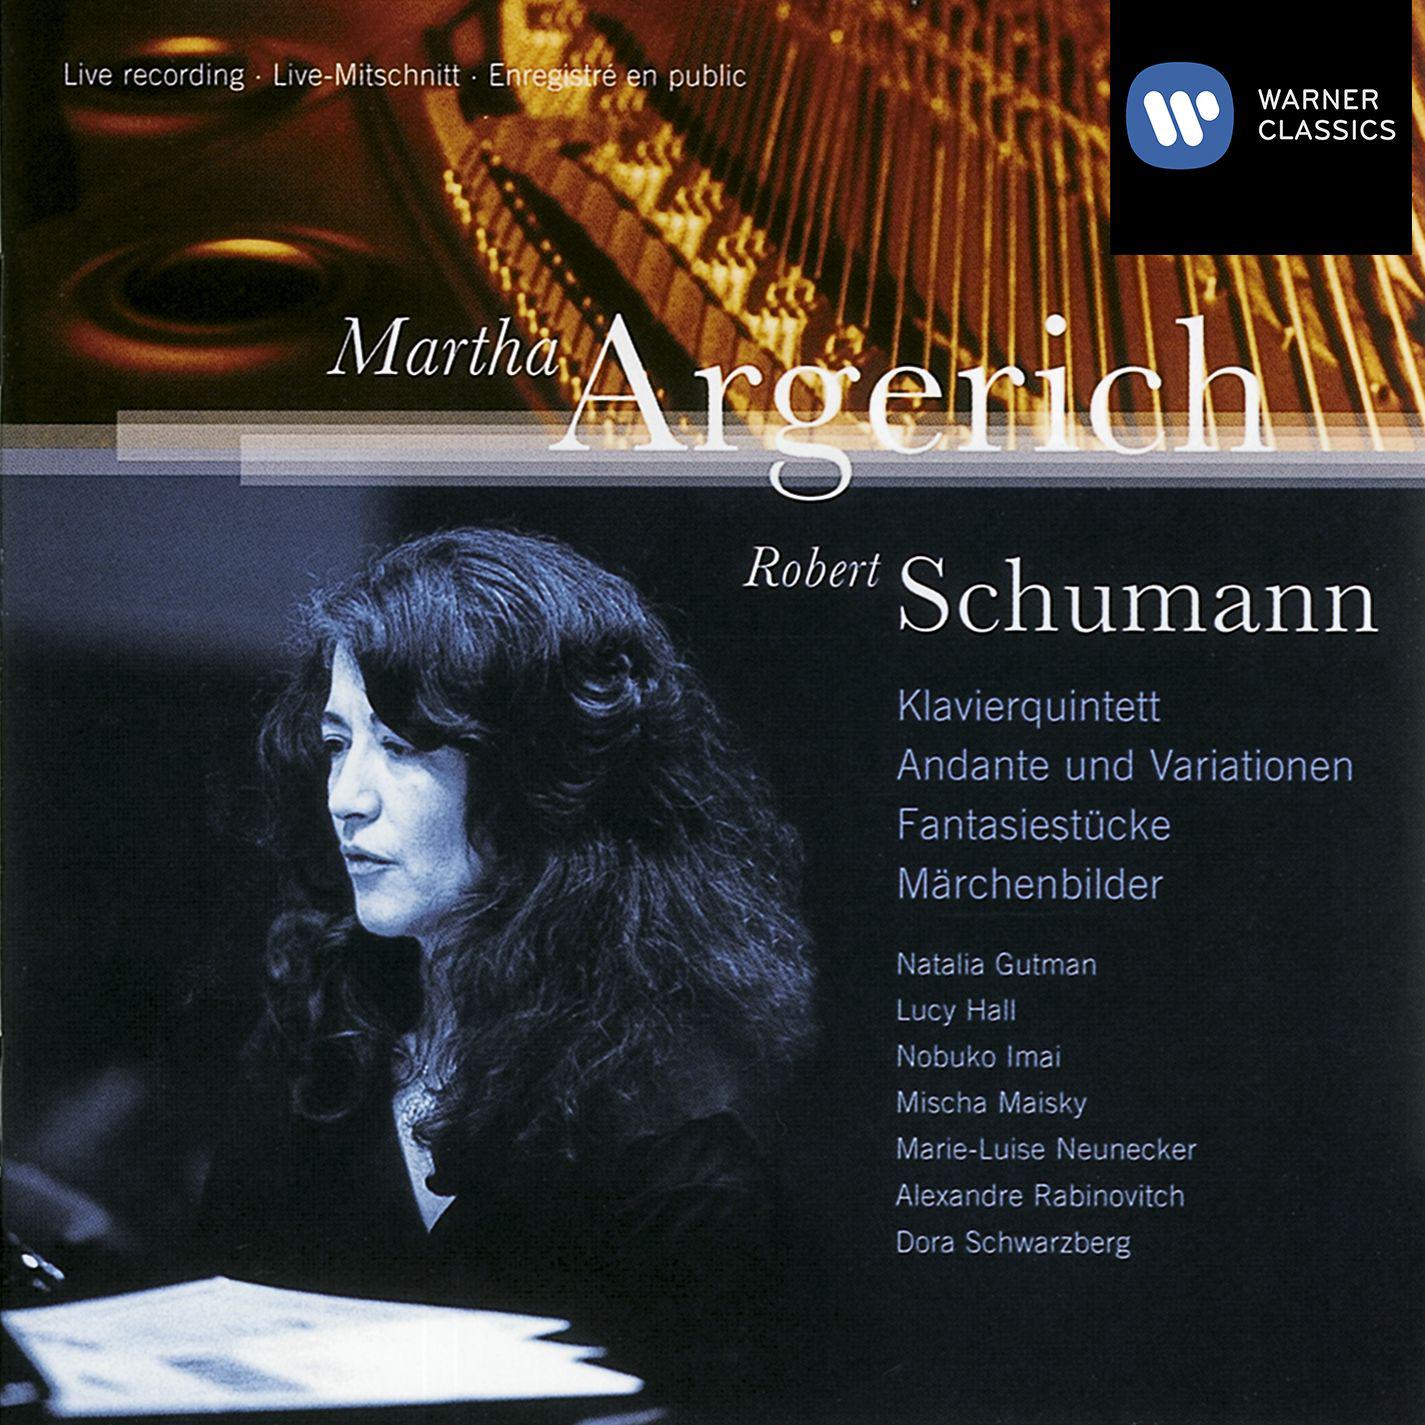 Schumann: Klavierquintett Andante  Variationen Fantasiestü cke M rchenbilder